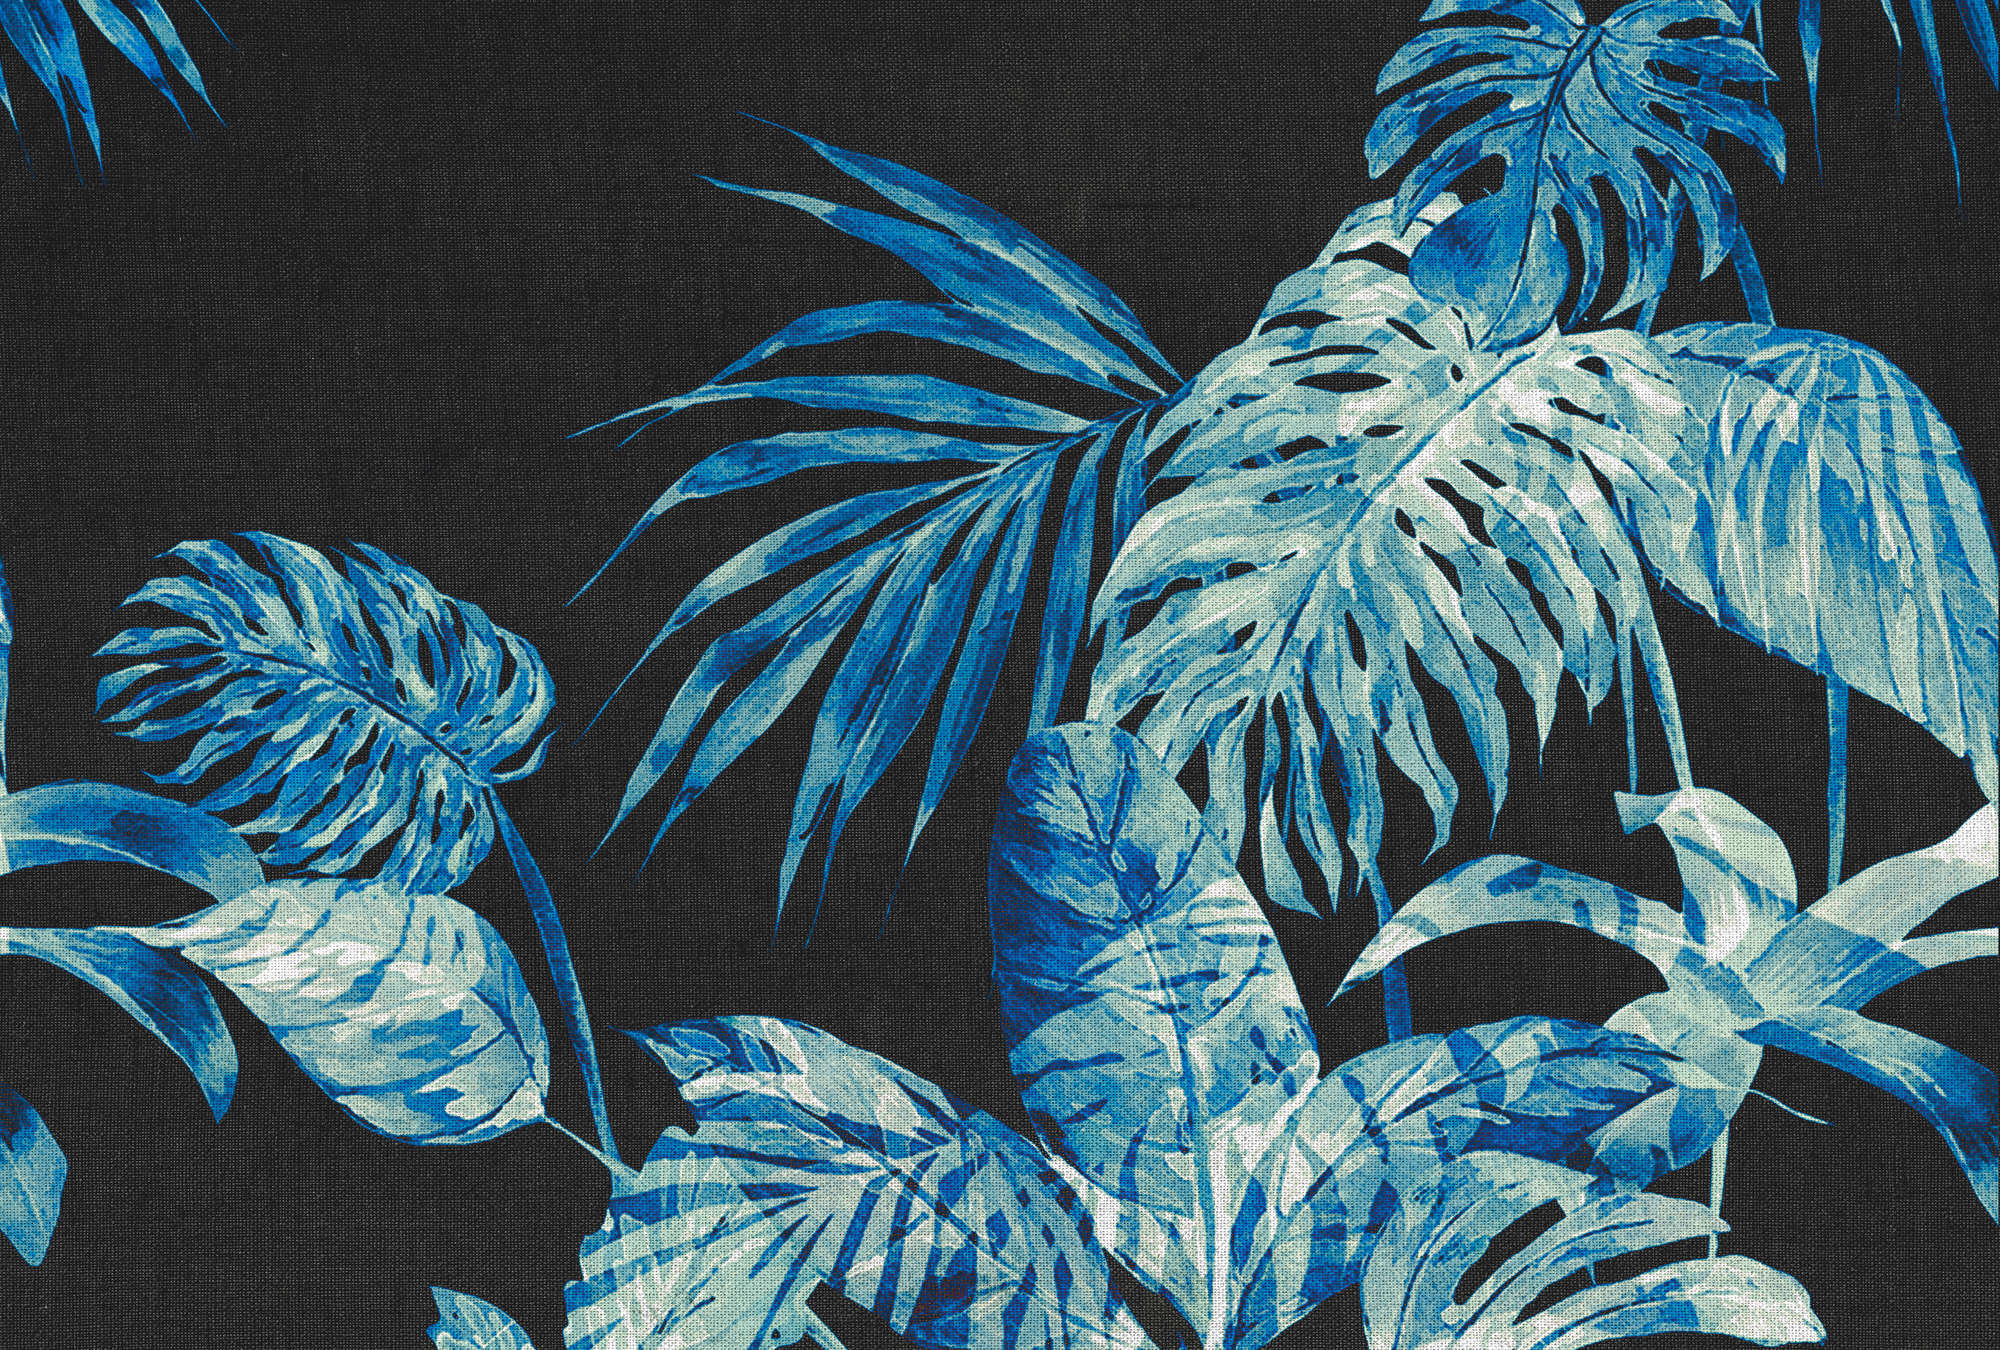             Blätter-Fototapete Aquarell Stil & schwarzem Hintergrund – Blau, Schwarz, Weiß
        